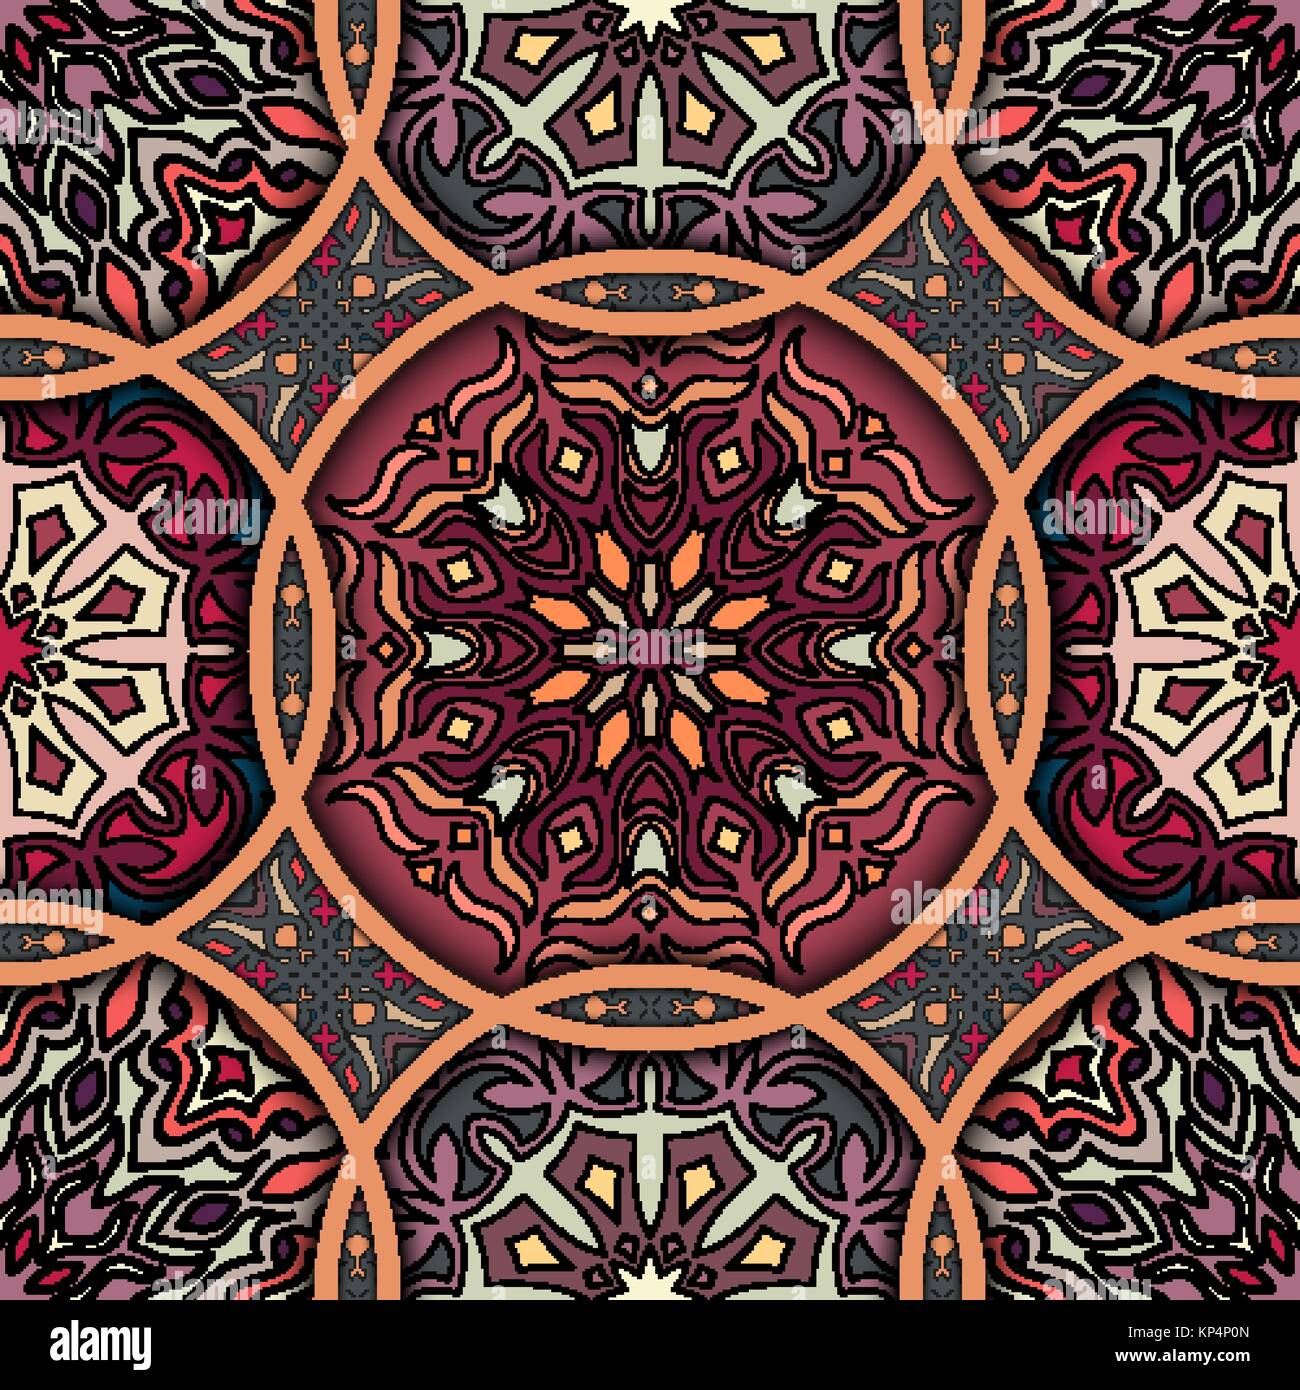 Bunte vintage nahtlose Muster mit floralen und Mandala Elemente. Hand gezeichnet Hintergrund. Für Gewebe, Tapeten, Fliesen, Verpackung benutzt werden, umfasst ein Stock Vektor